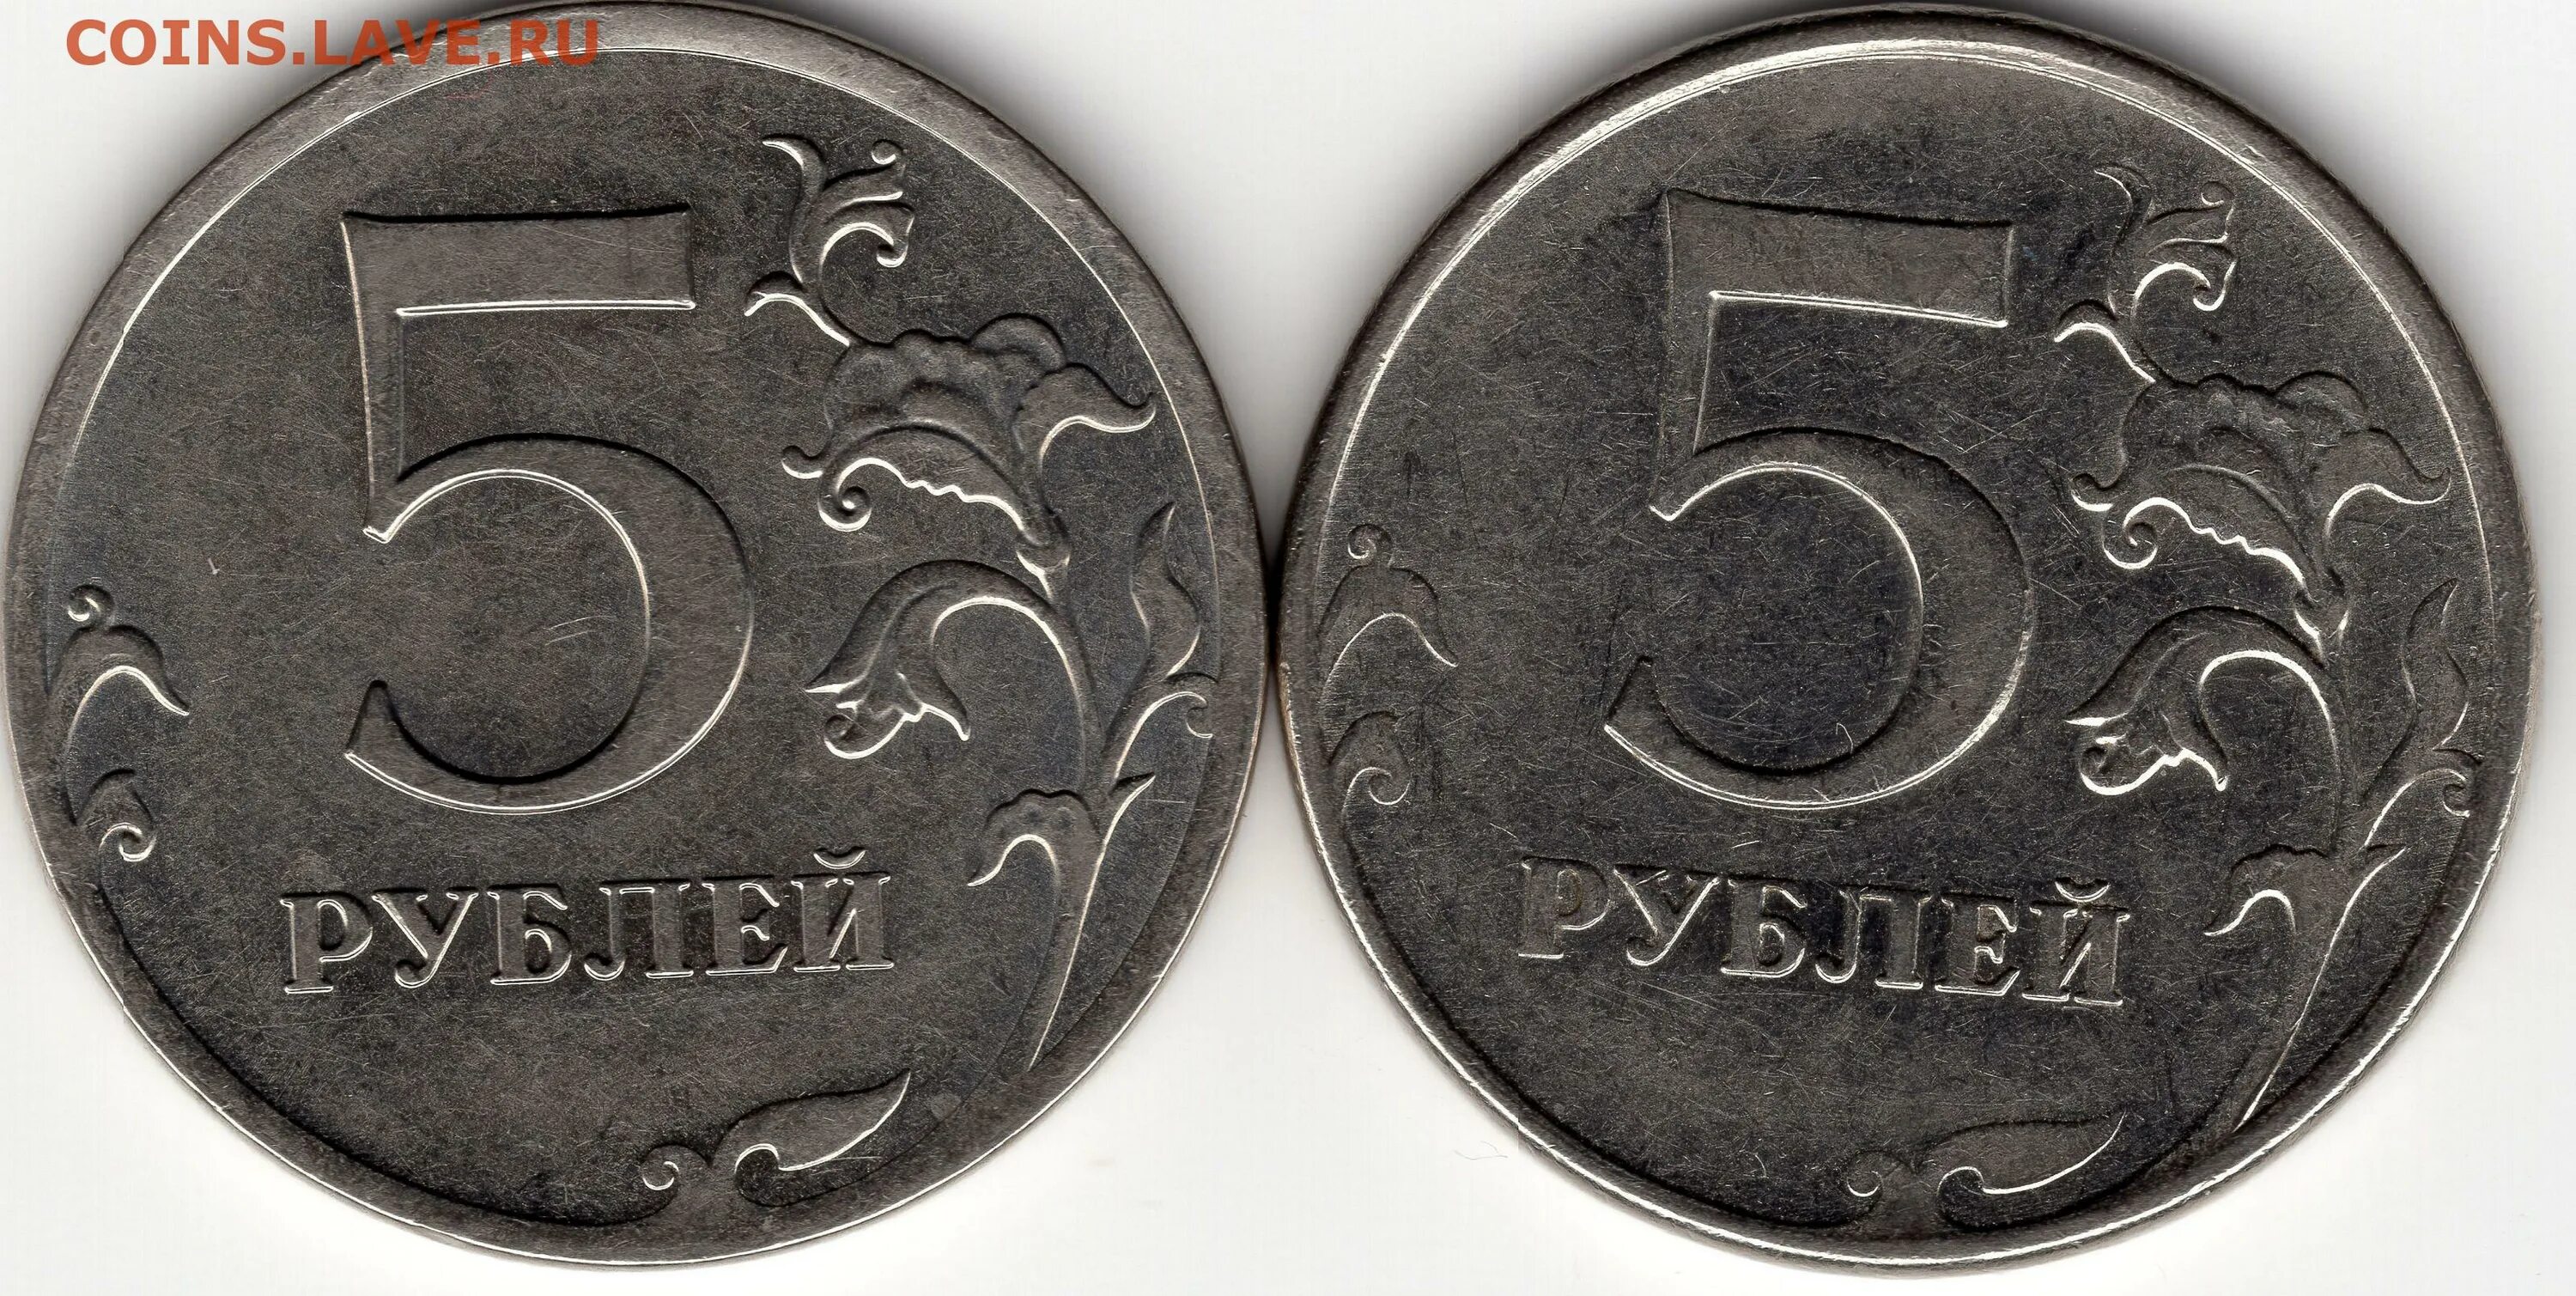 Лицевая сторона 5 рублей. Лицевая сторона монеты 5 рублей. 5 Руб 2012г. Лицевая сторона монеты 5 руб. 5 рублей стороны